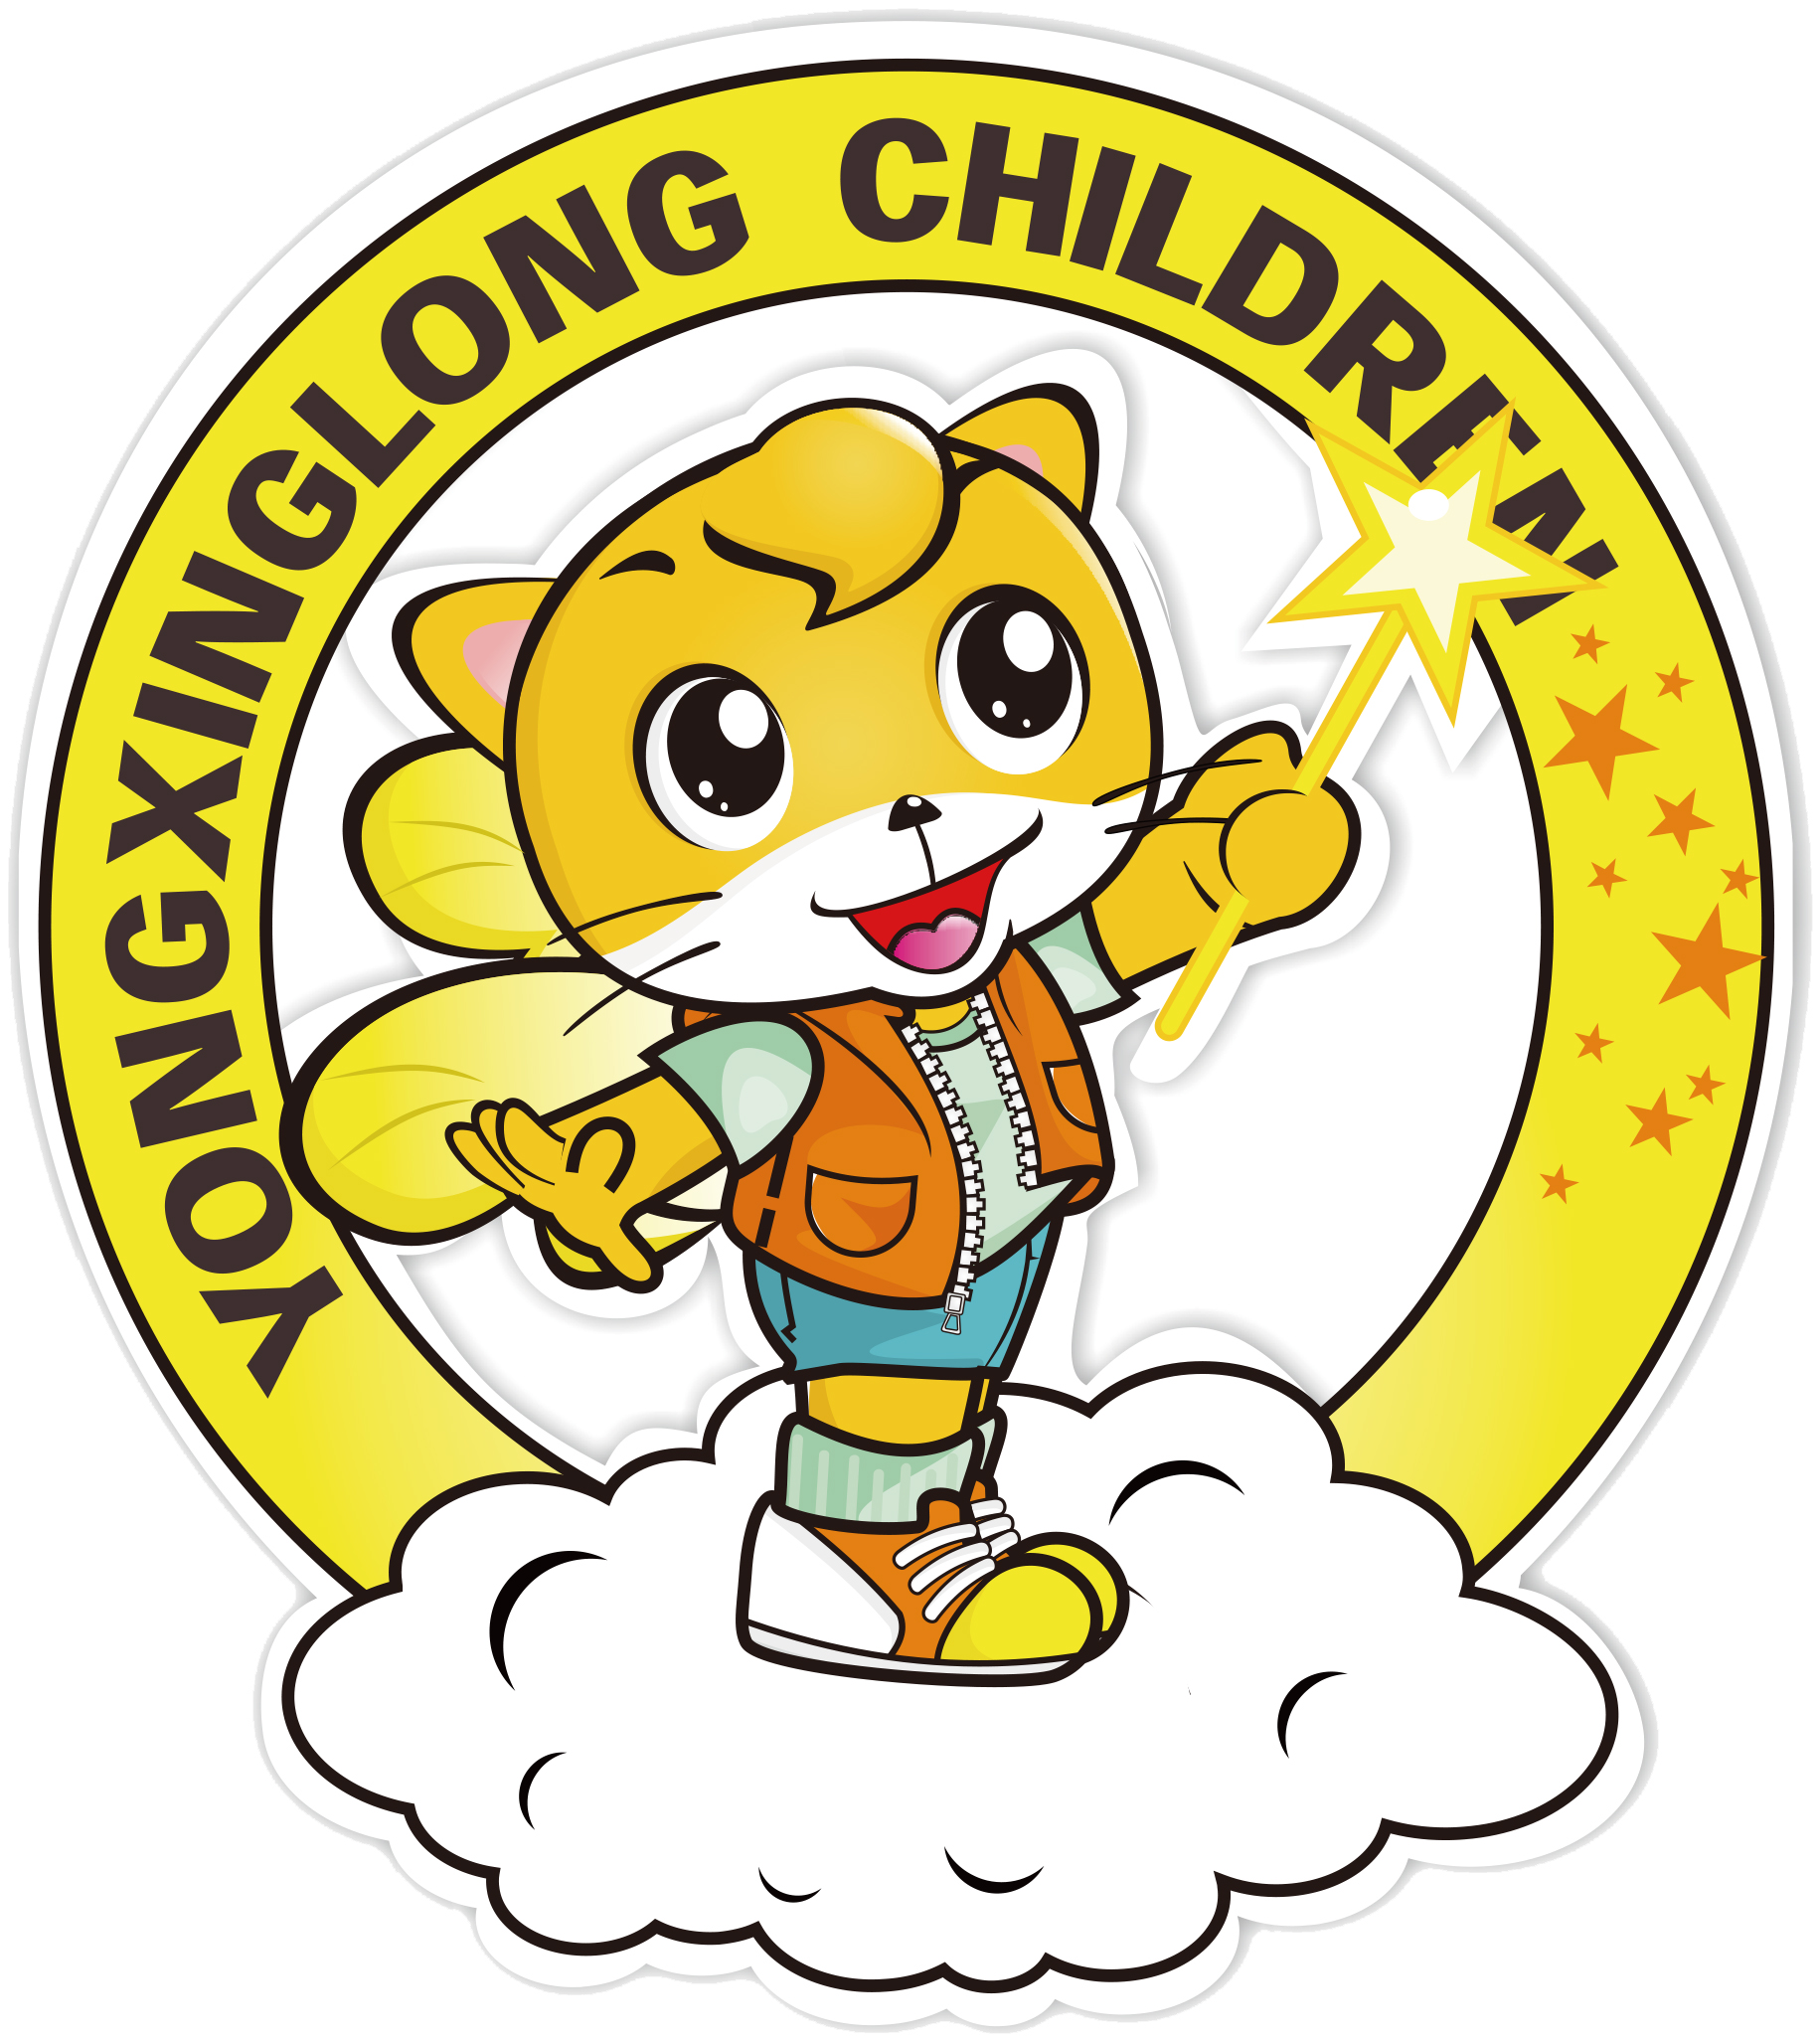 YONGXINGLONG CHILDREN'S APPLIANCE FACTORY(SIHUI)